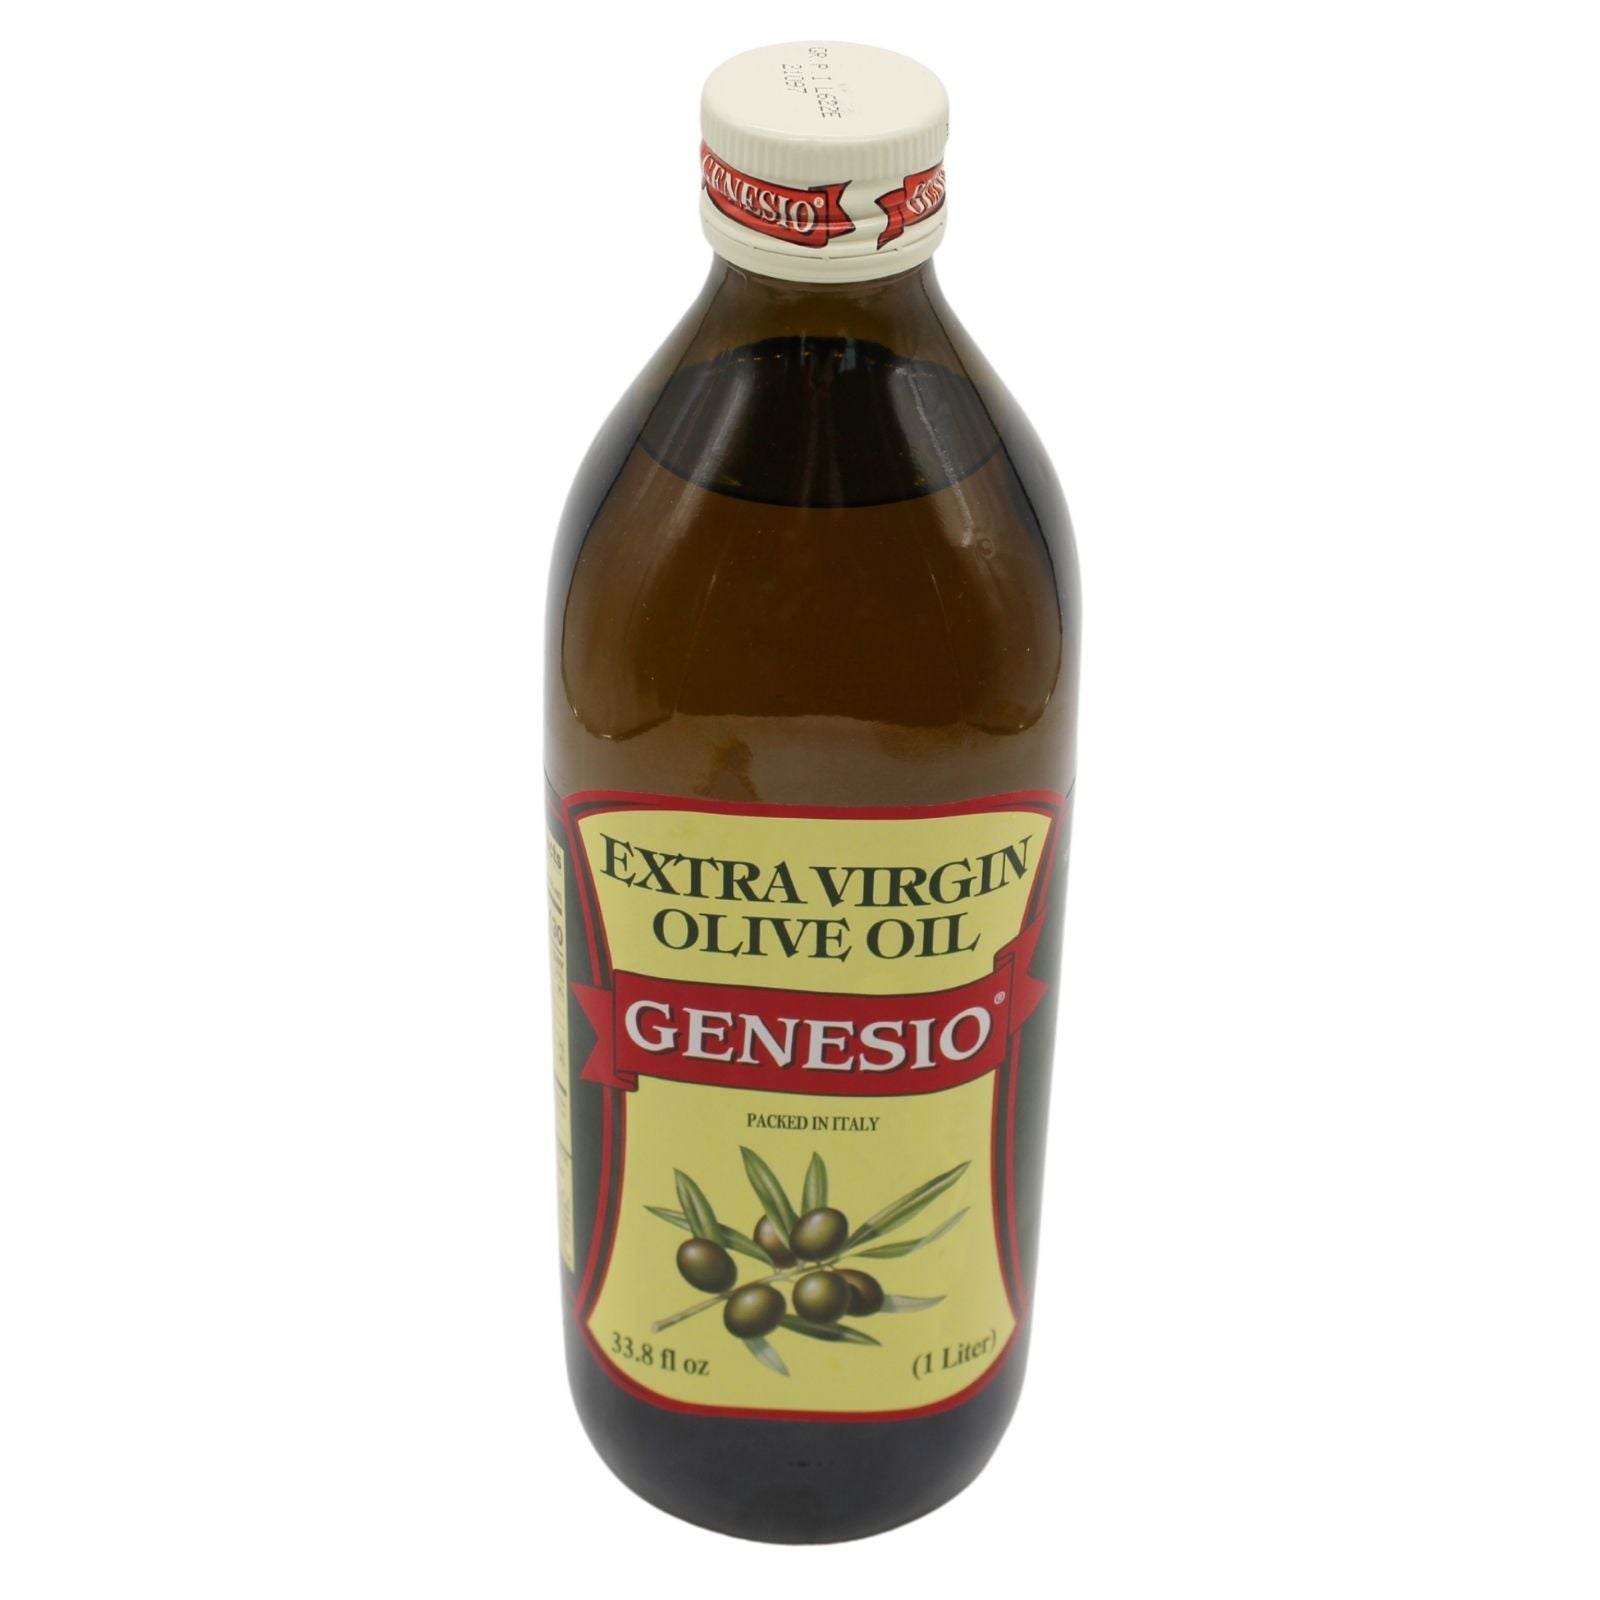 Genesio Premium Grade Extra Virgin Olive Oil 1 Liter - Top